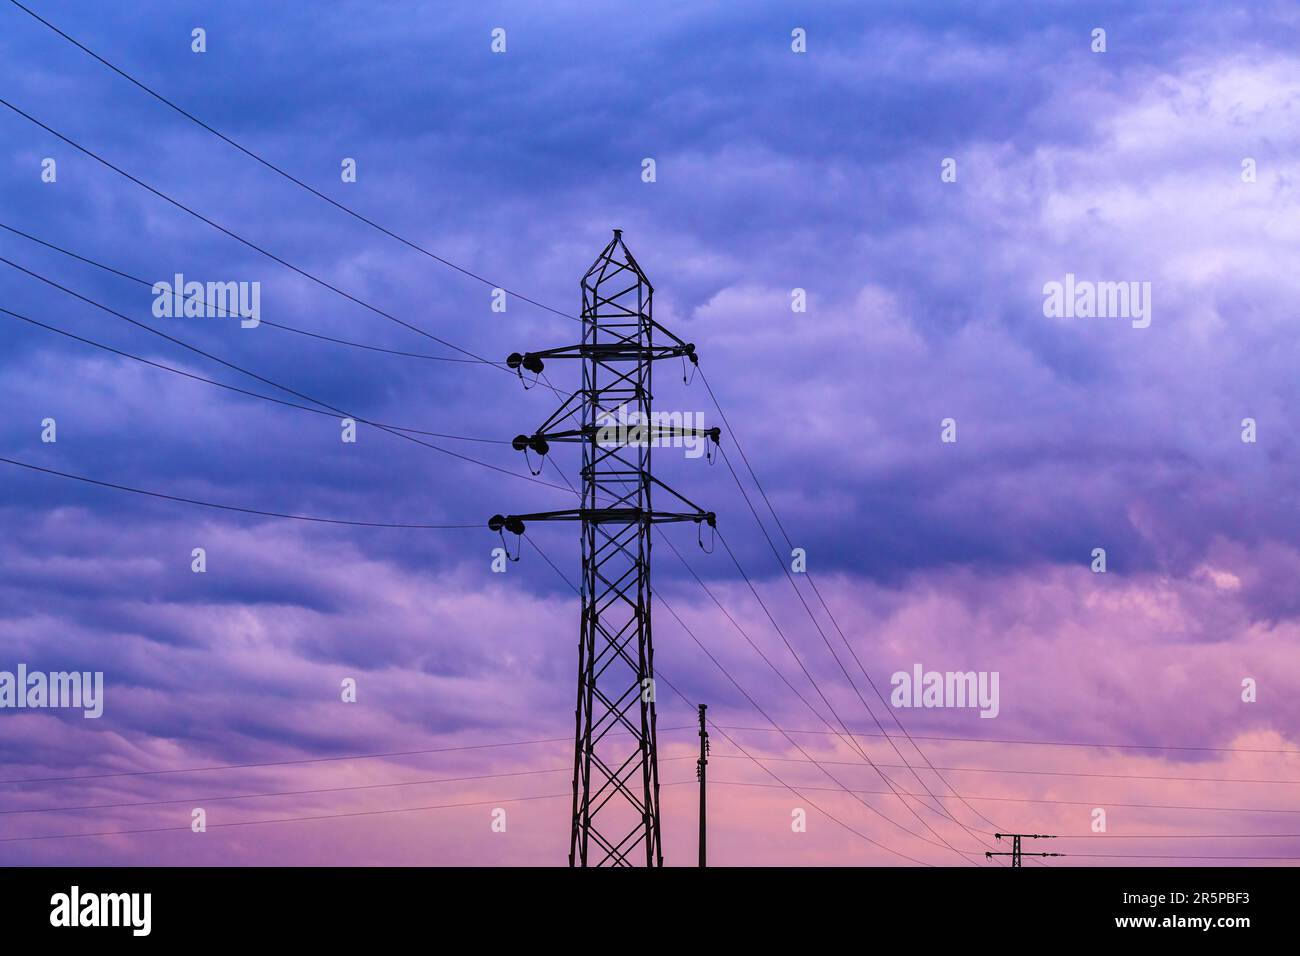 Situazione di crisi energetica immagine concettuale, silhouette di tralicci elettrici e cavi elettrici contro il drammatico cielo viola tramonto, focus selettivo Foto Stock